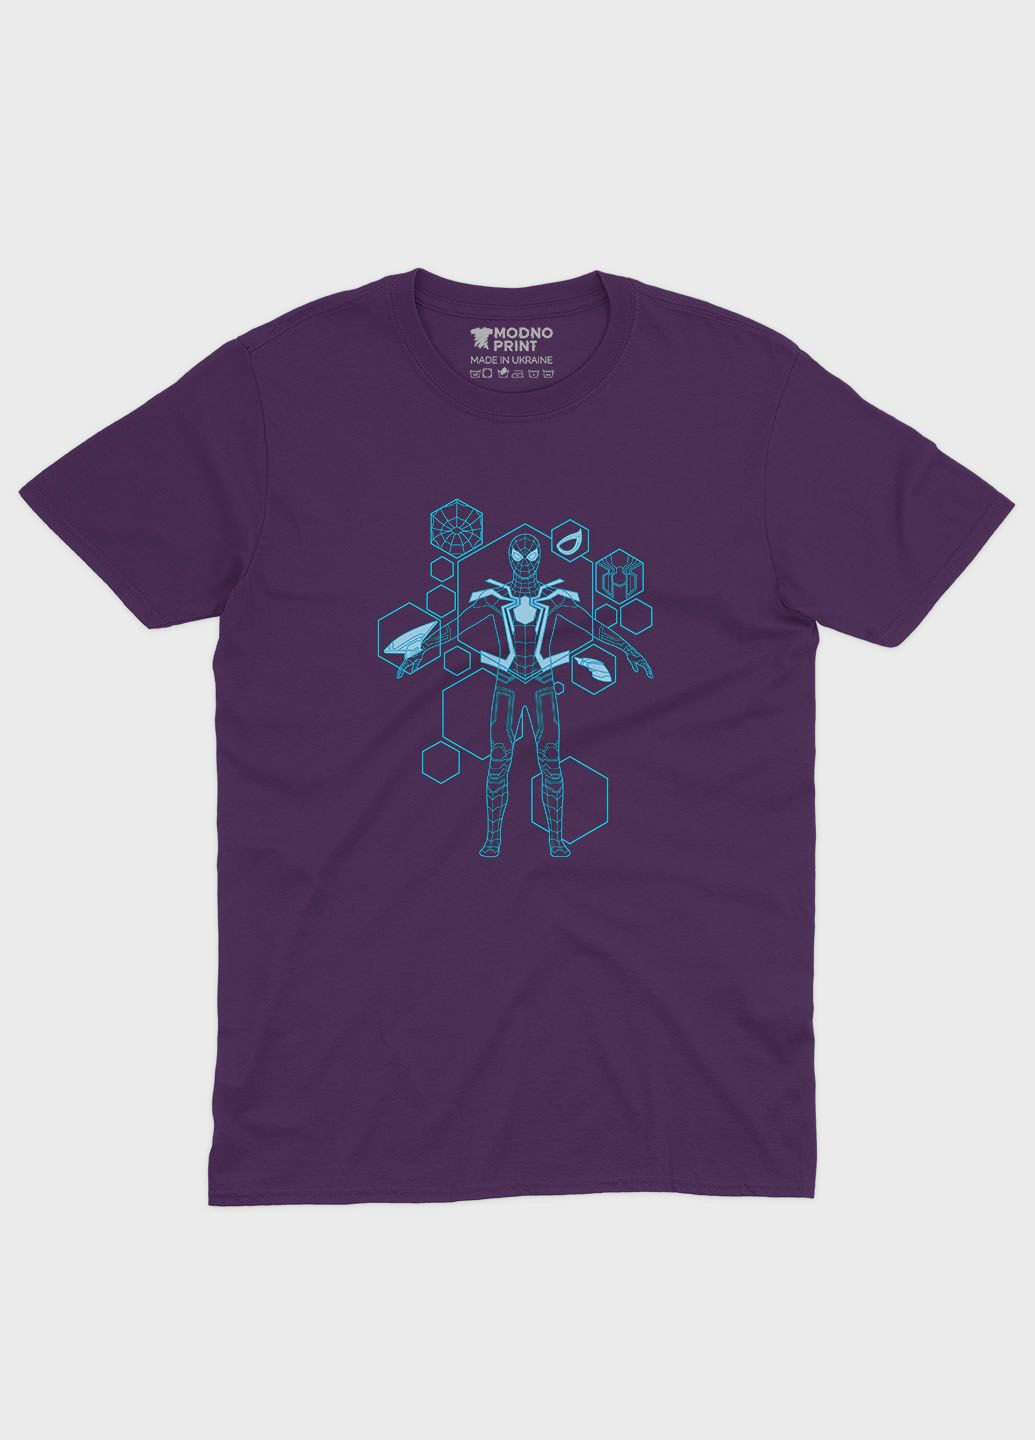 Фиолетовая демисезонная футболка для девочки с принтом супергероя - человек-паук (ts001-1-dby-006-014-094-g) Modno